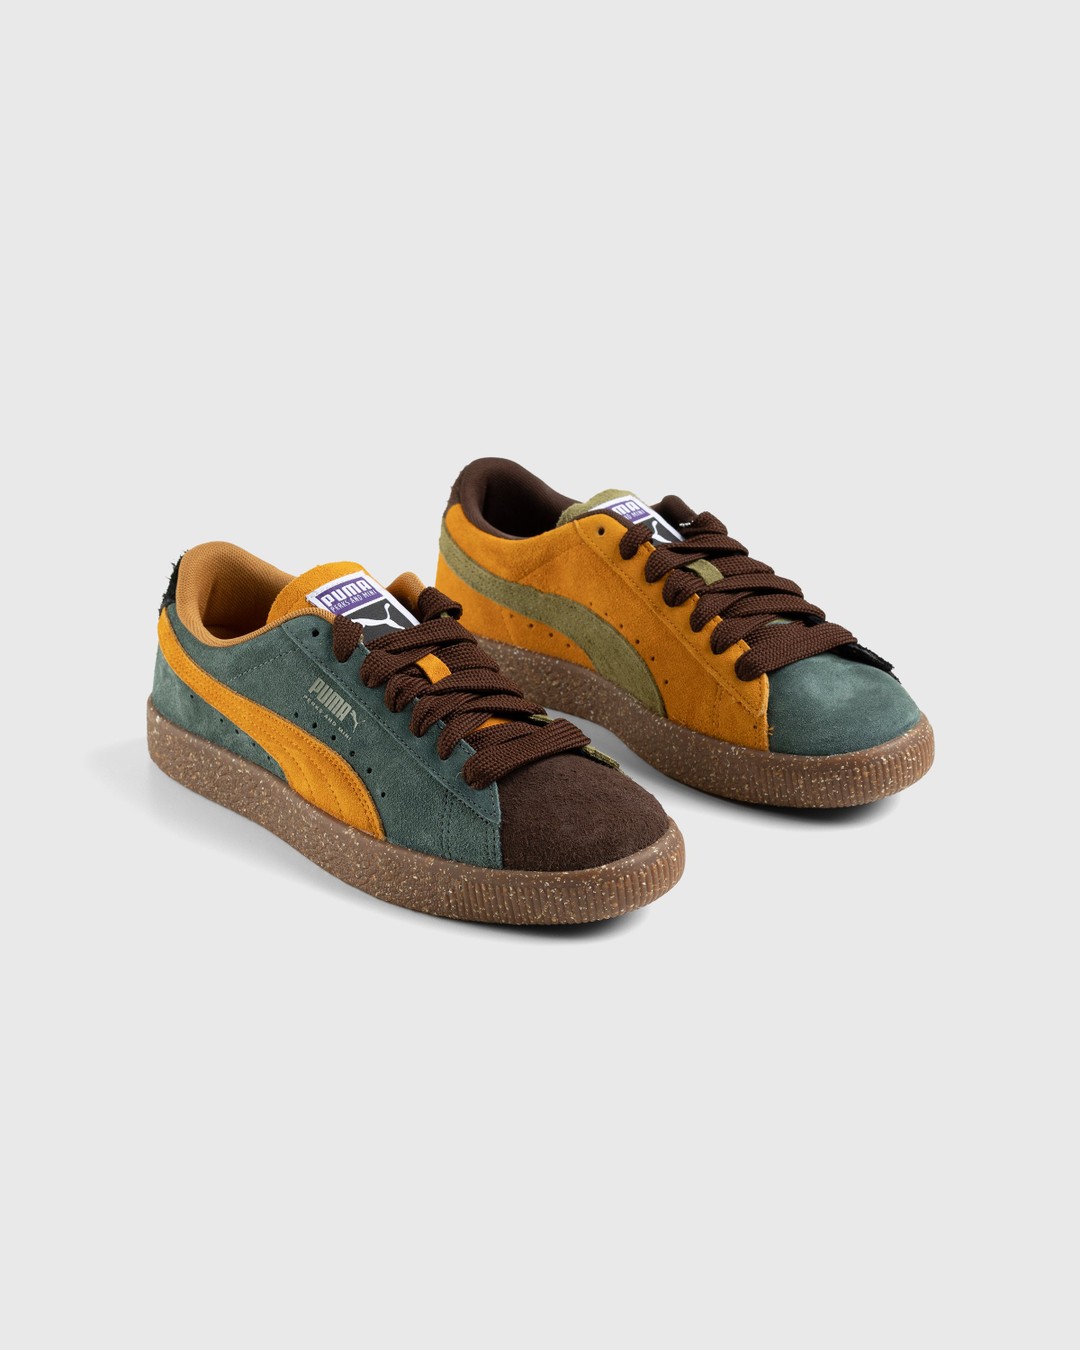 Puma x P.A.M. – Suede Vintage Brown - Low Top Sneakers - Brown - Image 3